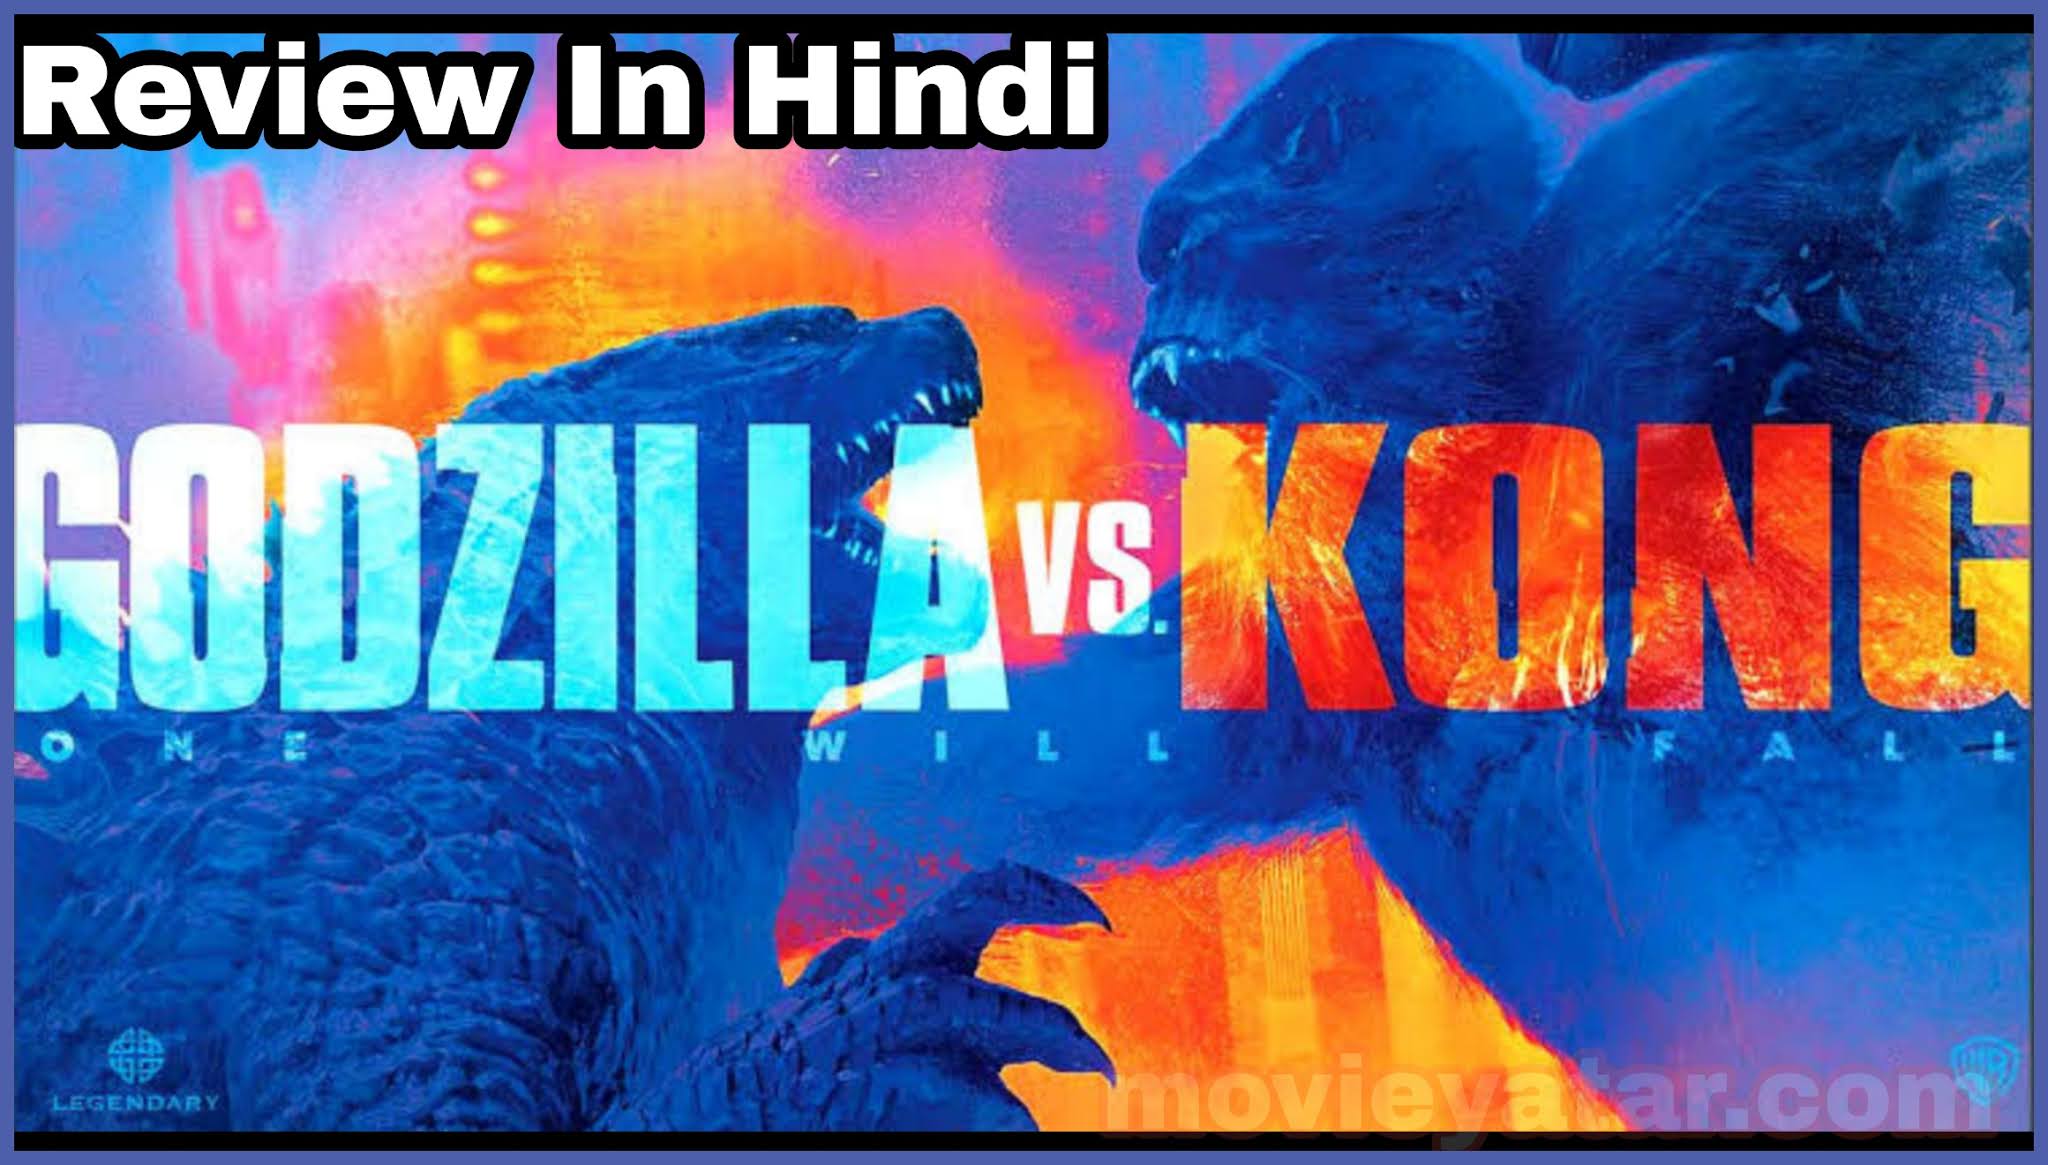 Godzilla vs Kong Trailer Review in Hindi language full story explain in Hindi language